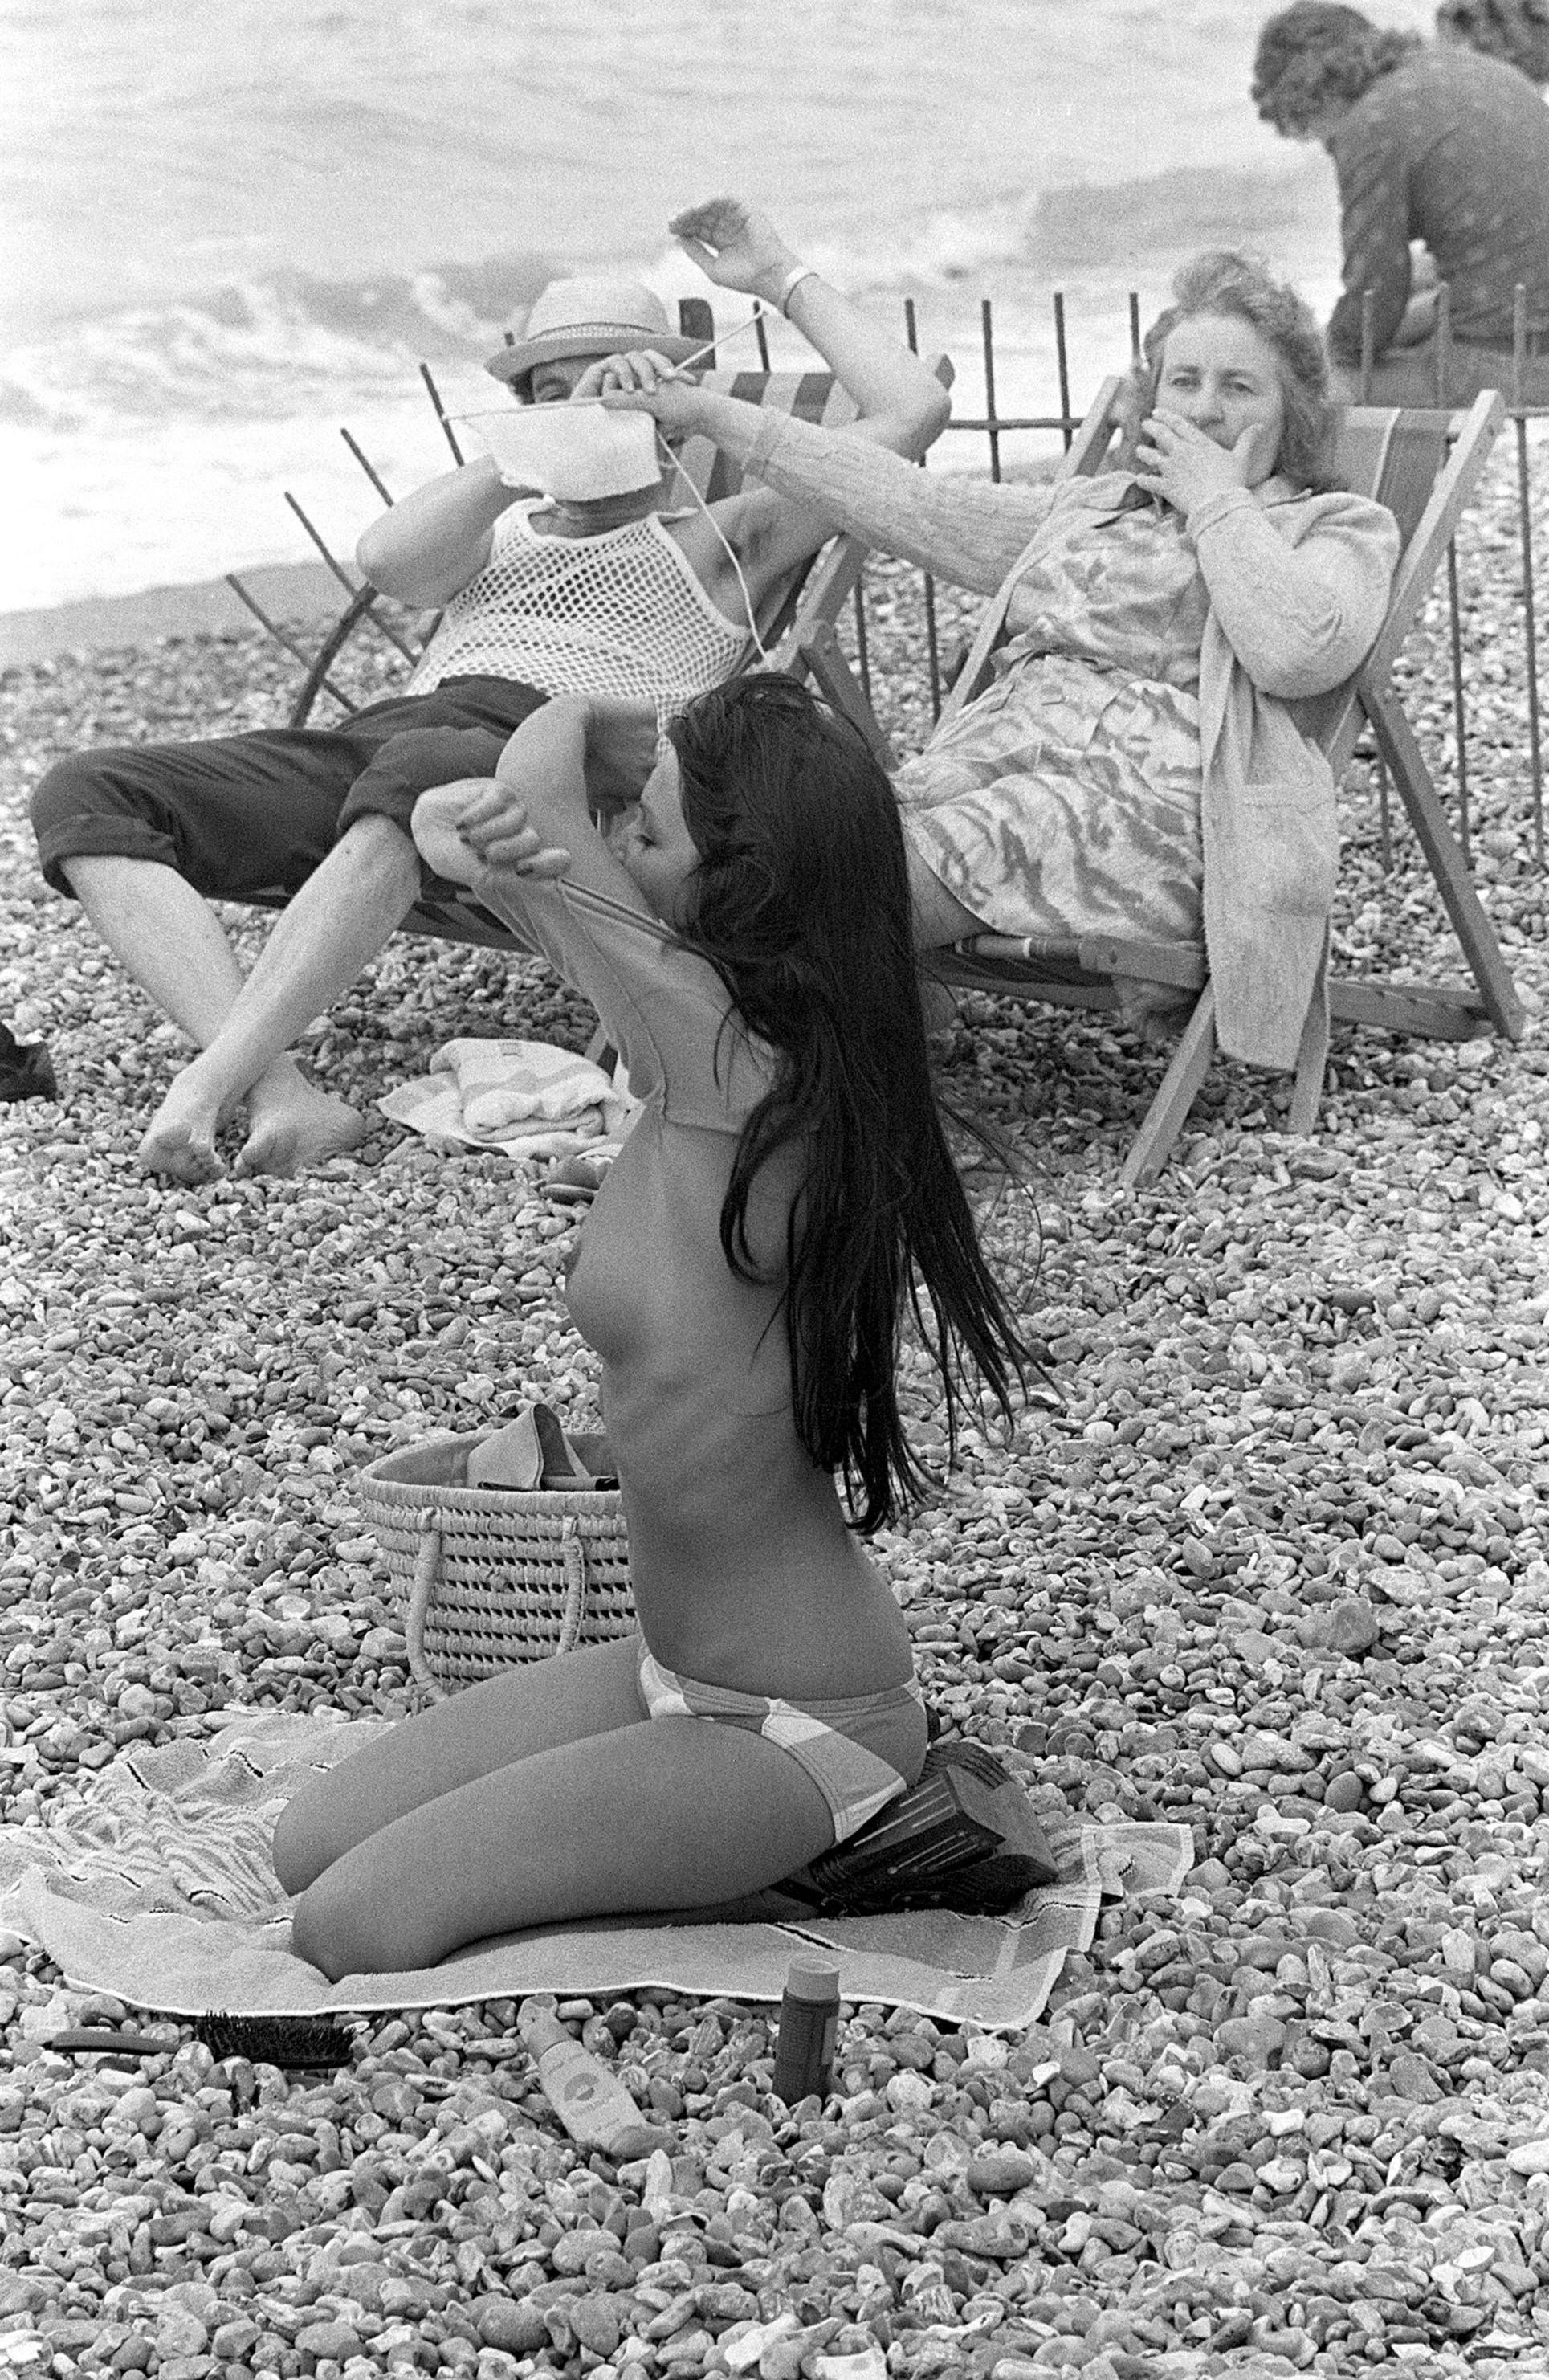 Реакция на раздевающуюся девушку, 1974. Автор неизвестен